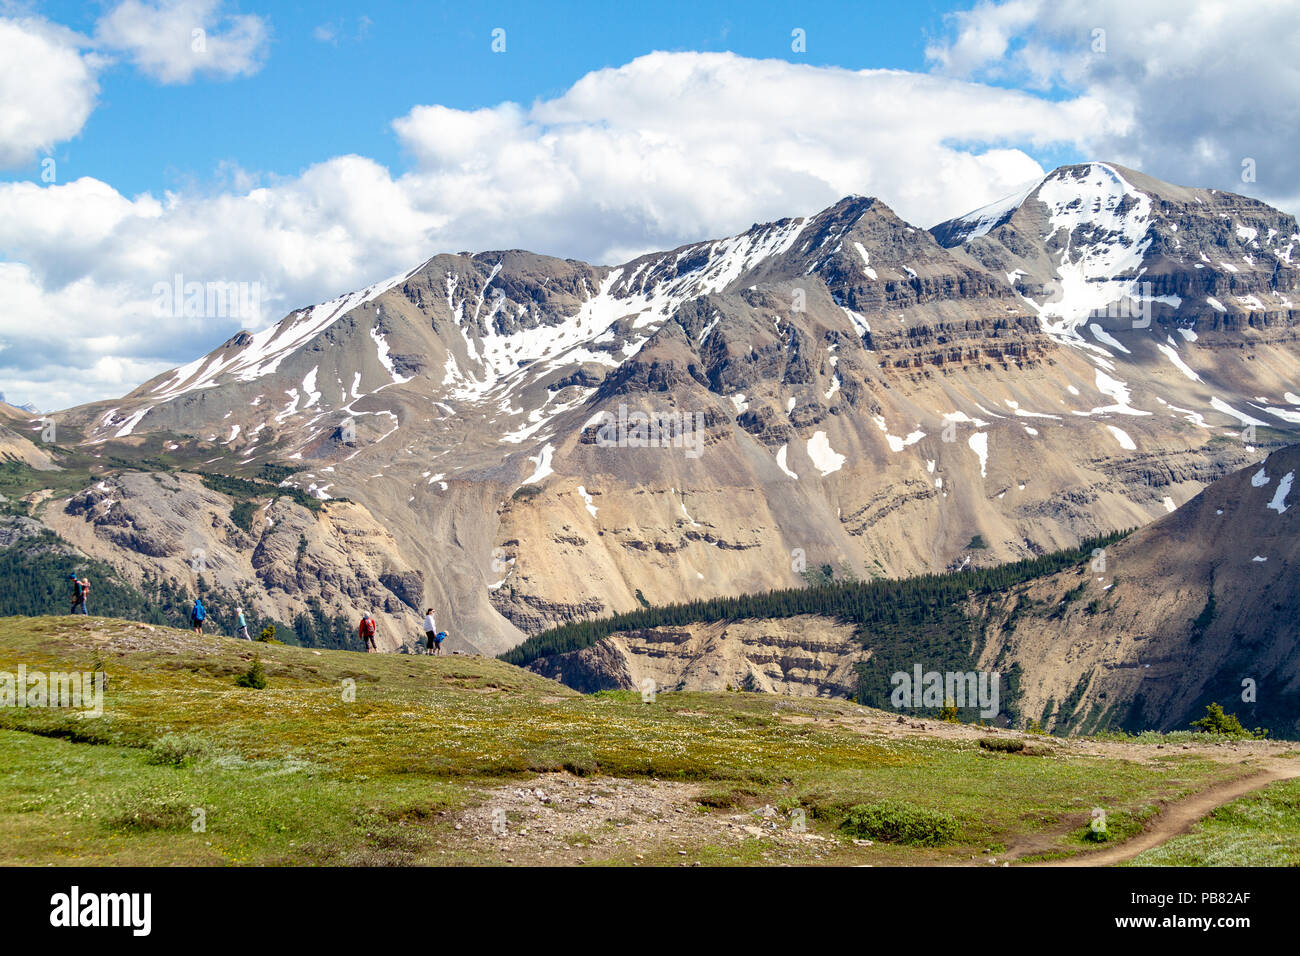 JASPER, Canada - 8 LUG 2018: Escursionisti in corrispondenza della cresta di Parker Ridge sulla Icefields Parkway nel Parco Nazionale di Jasper con le Montagne Rocciose Canadesi Foto Stock